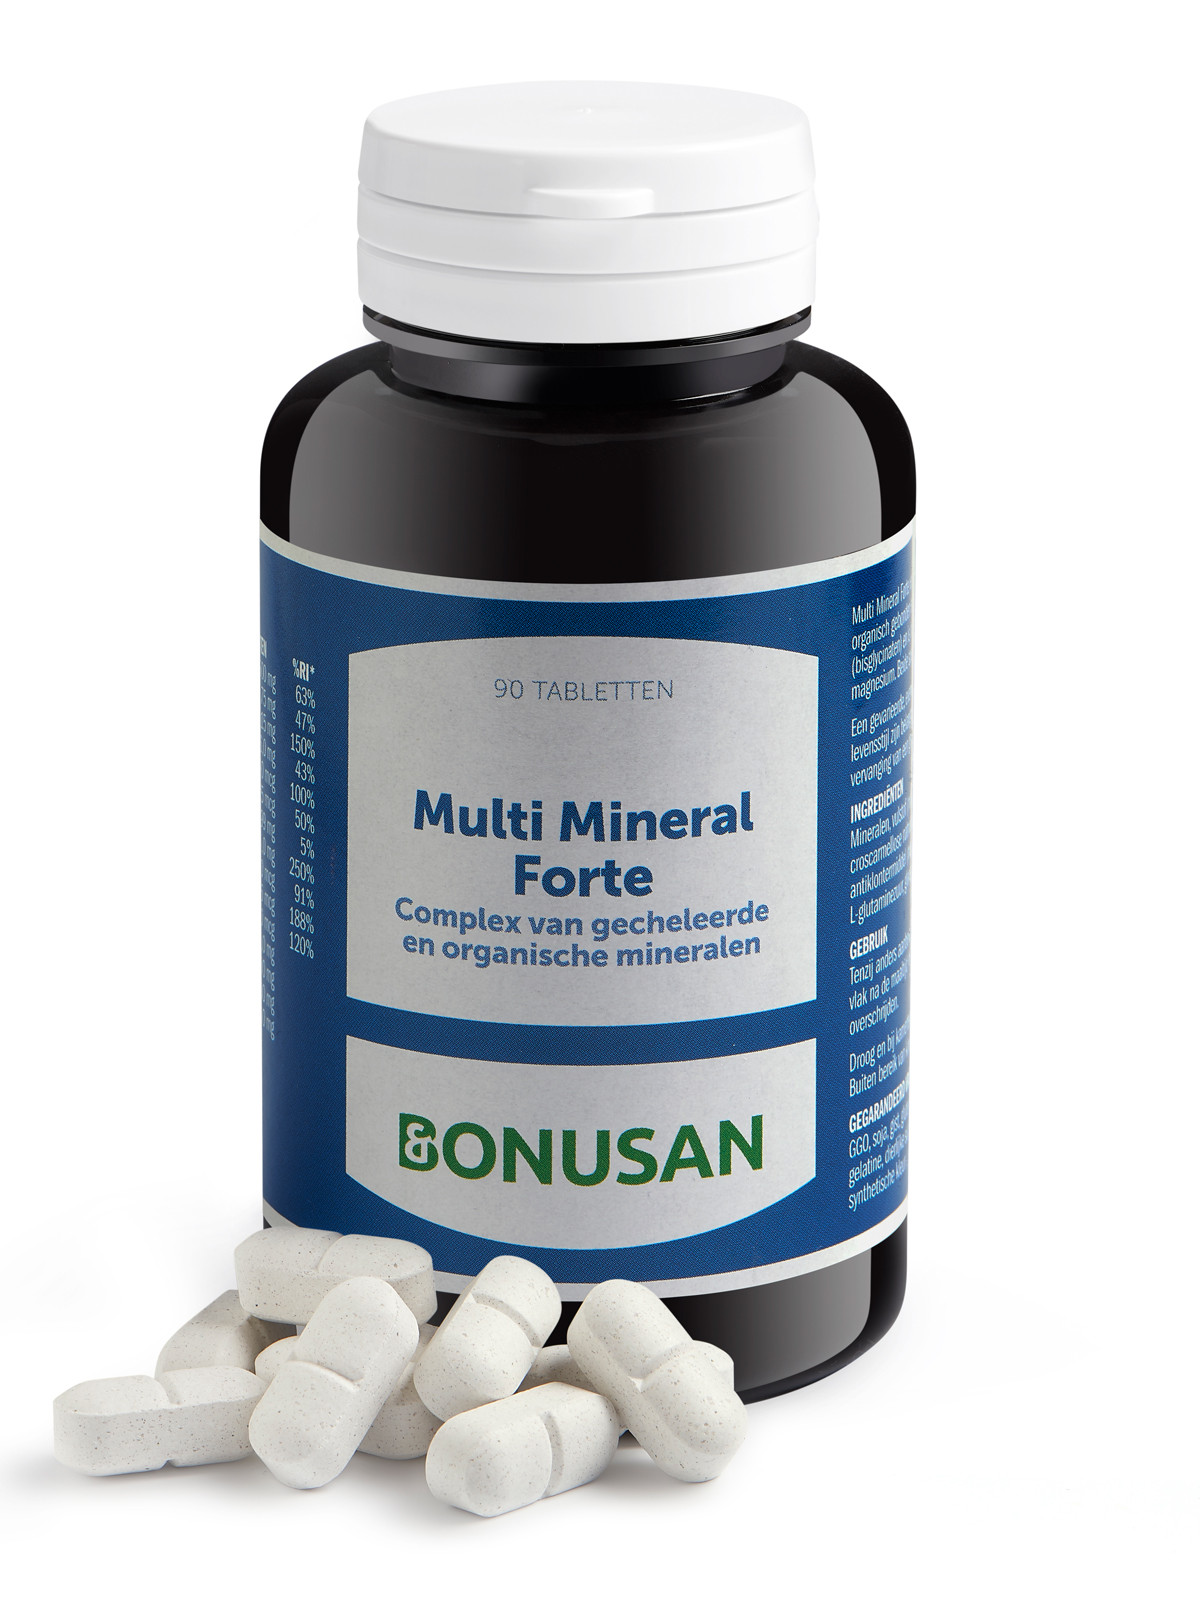 Bonusan - Multi mineral forte (binnenkort vernieuwd)